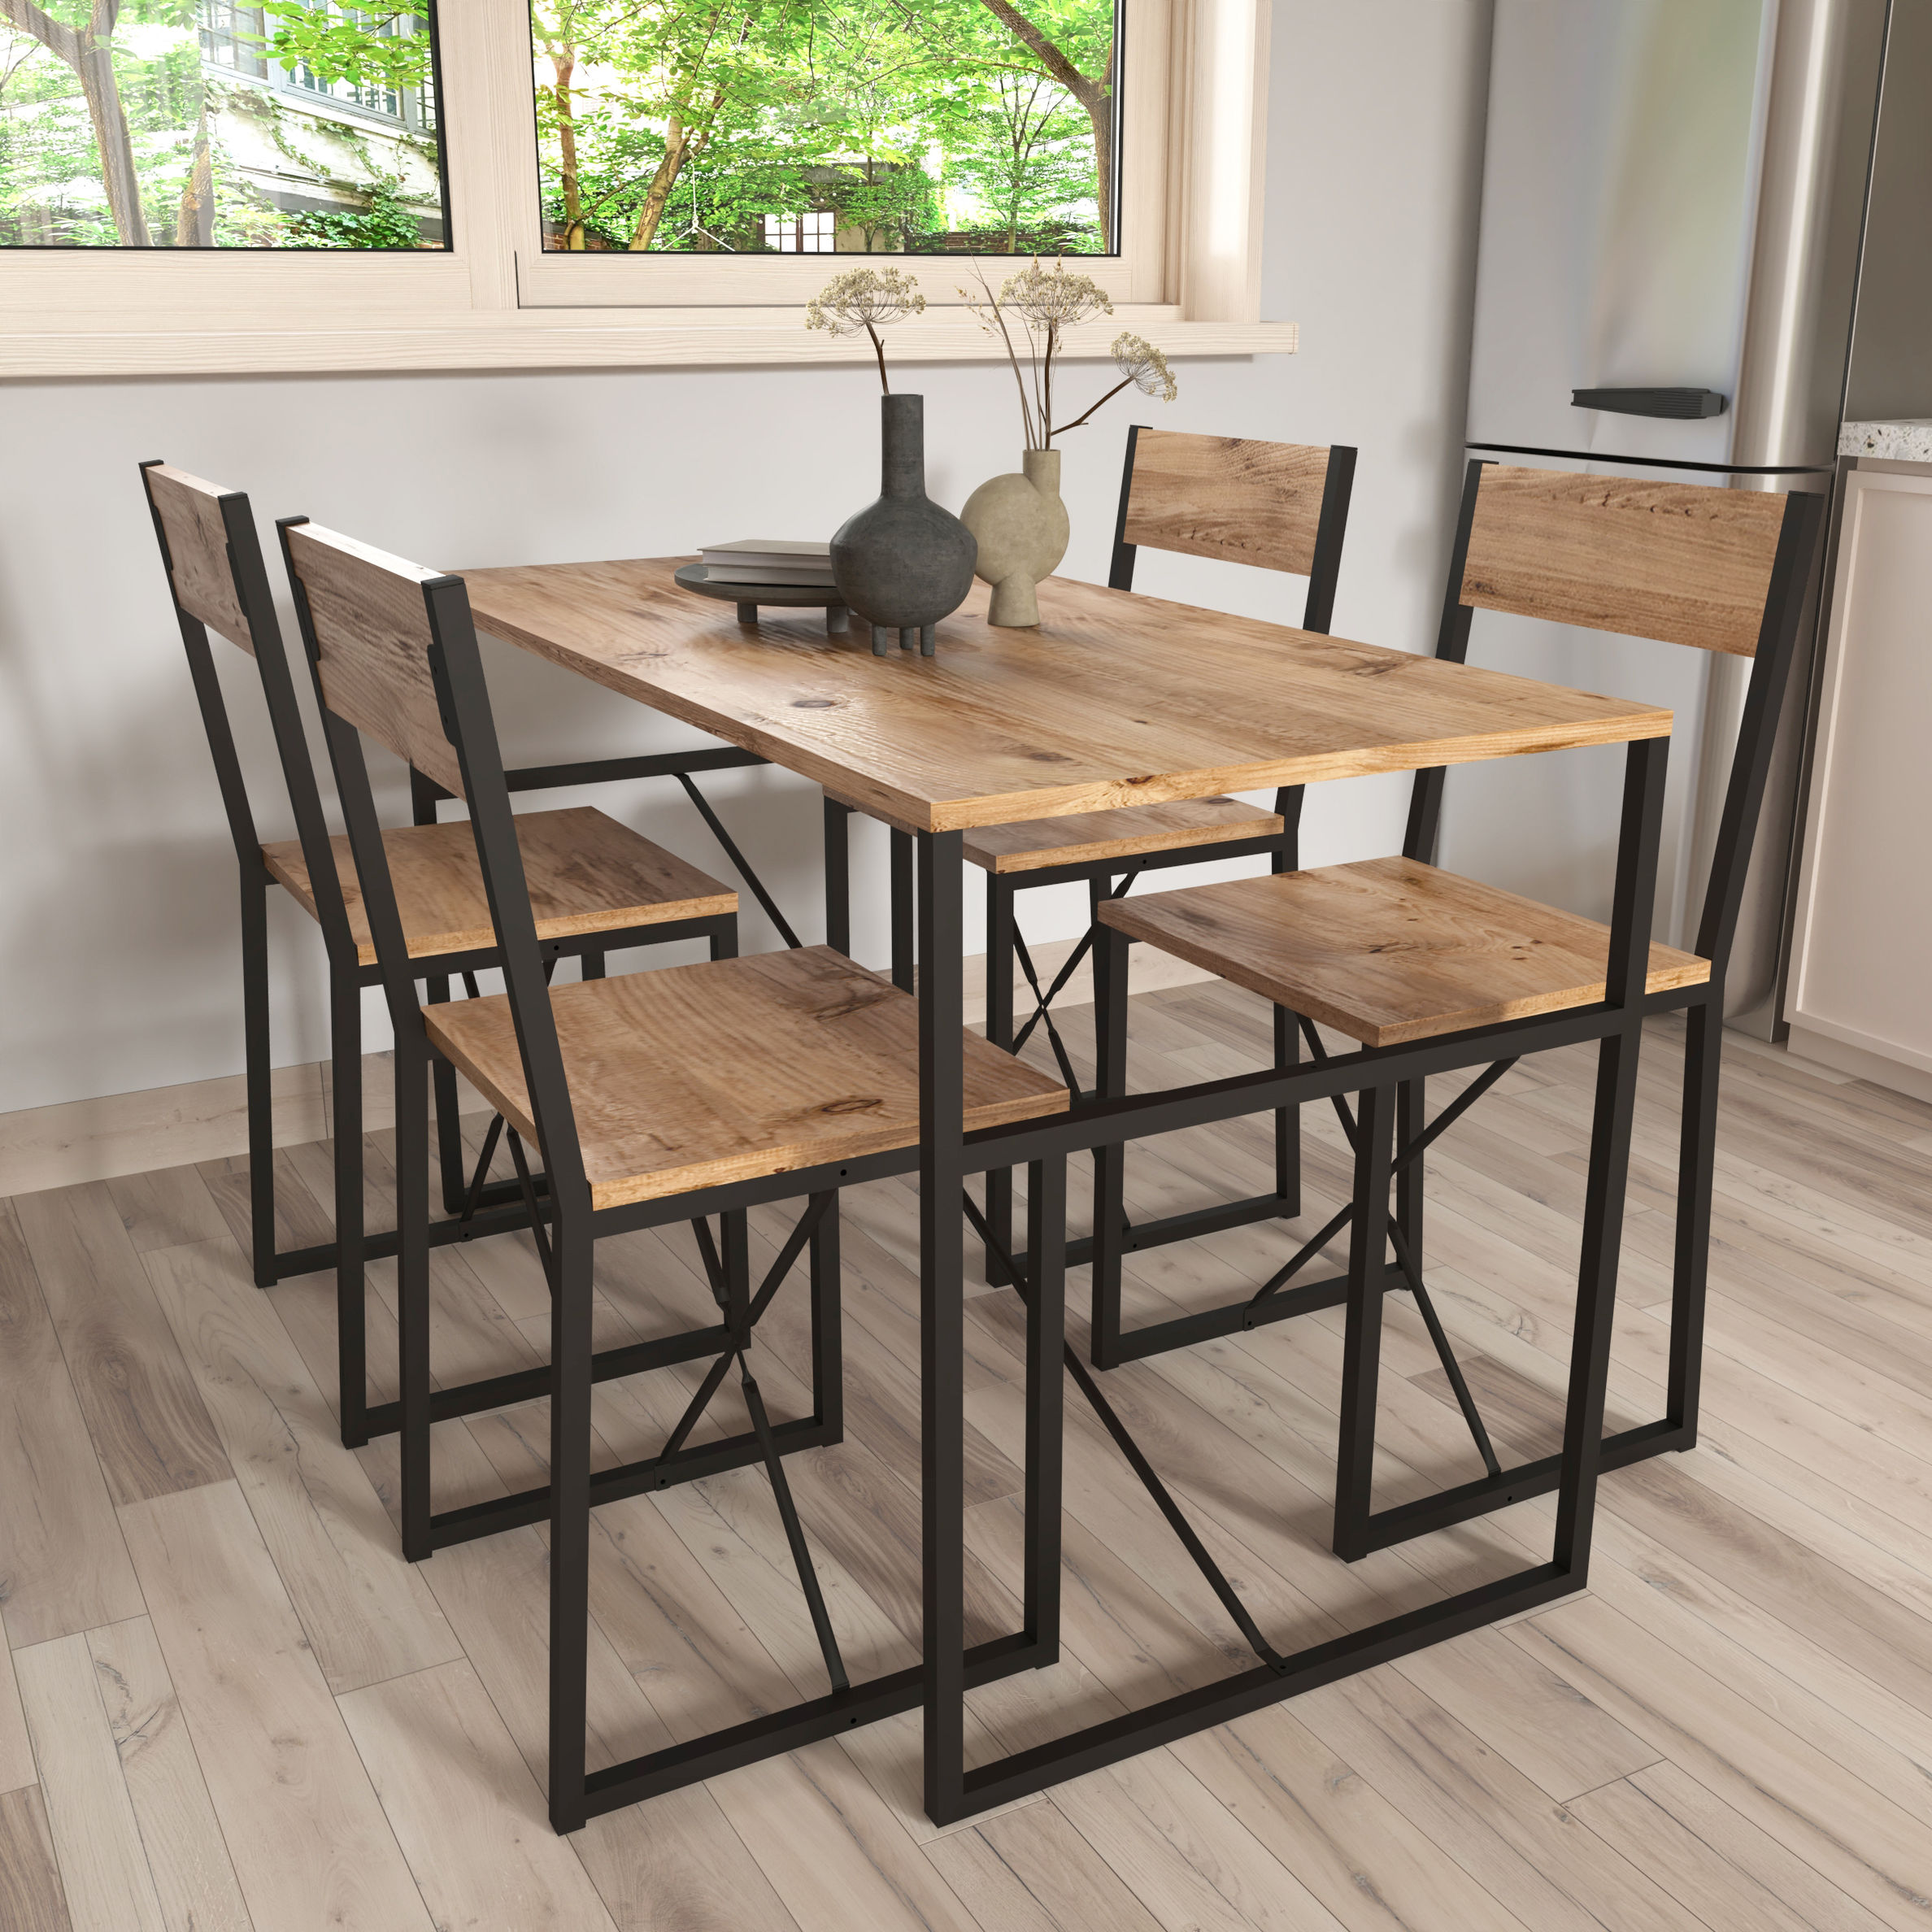 VCM 5-tlg. Holz Metall Essgruppe Küchentisch Esstisch Set Tischgruppe Tisch  Stühle Insasi L Farbe: Honig-Eiche | Weltbild.de